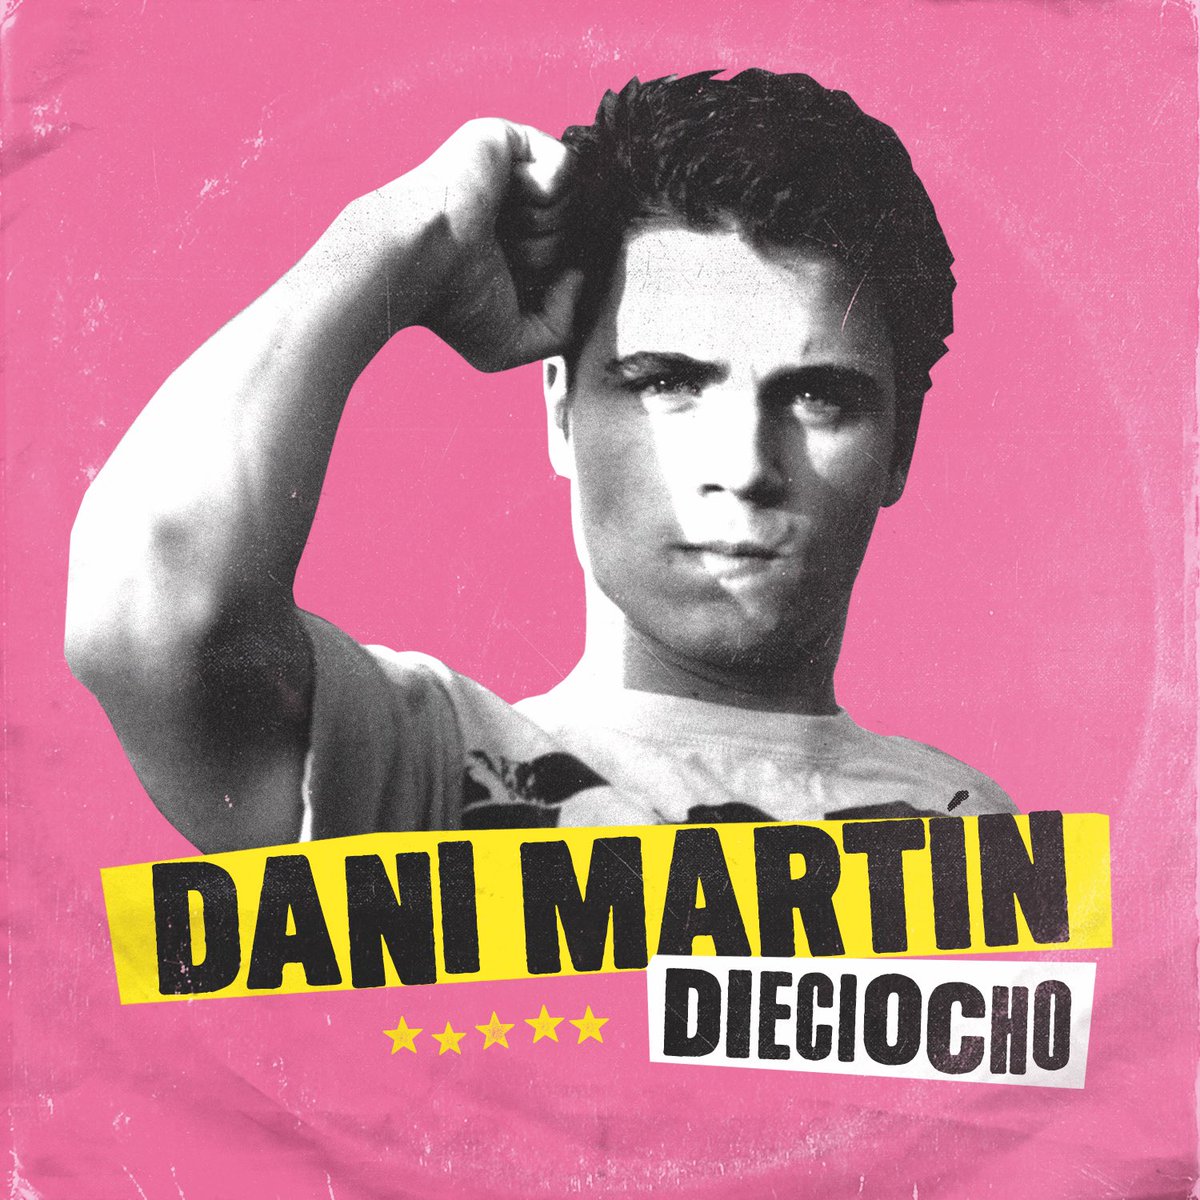 Dani Martín publicará su nuevo single ‘Dieciocho’ el 20 de abril